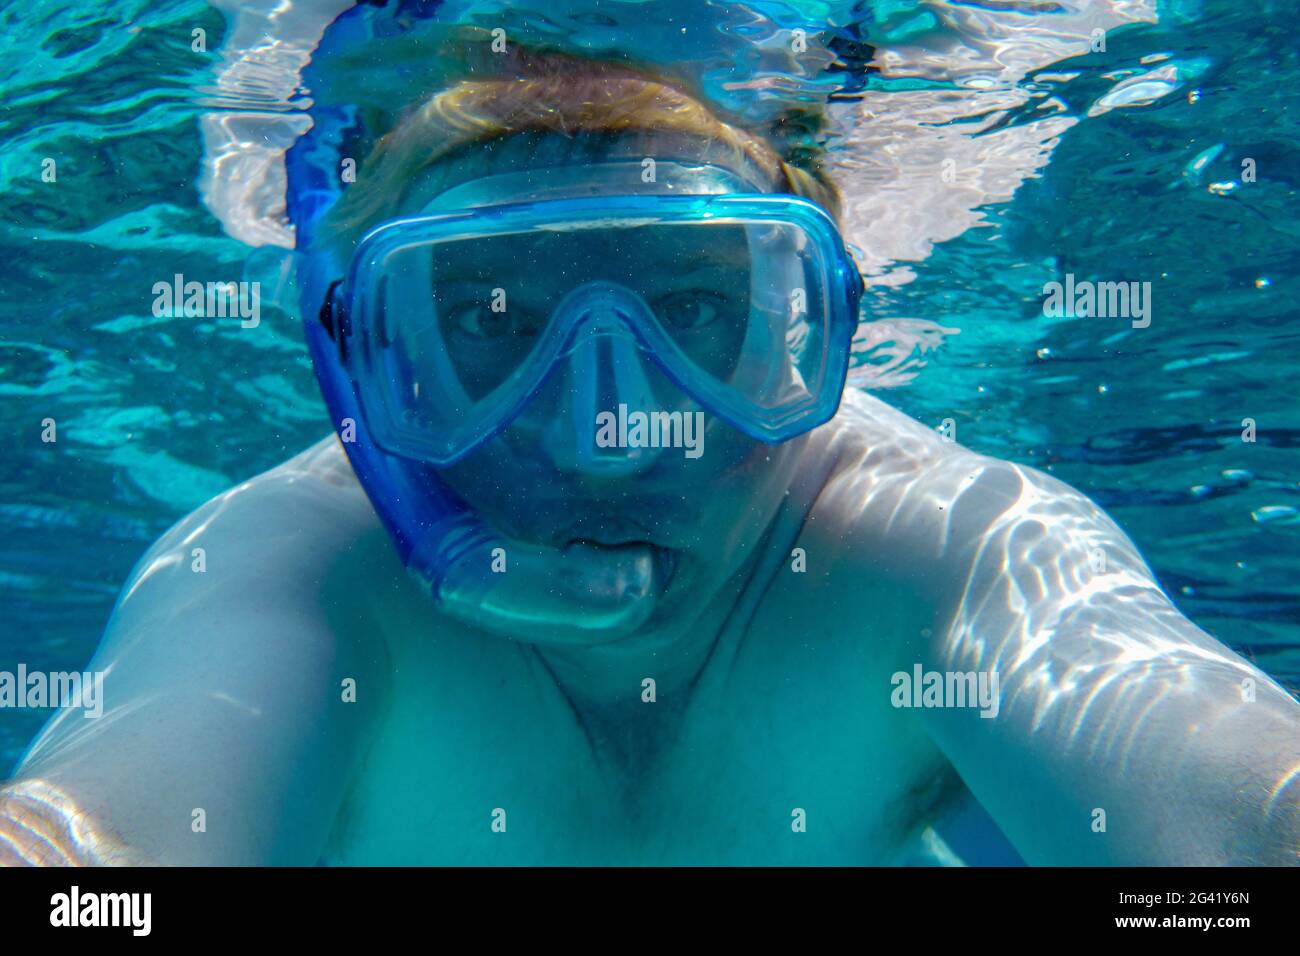 Prise de vue sous-marine et selfie par le photographe Holger Leue avec masque de plongée et tuba dans le lagon de Bora Bora, Bora Bora, îles Leeward, Pol français Banque D'Images